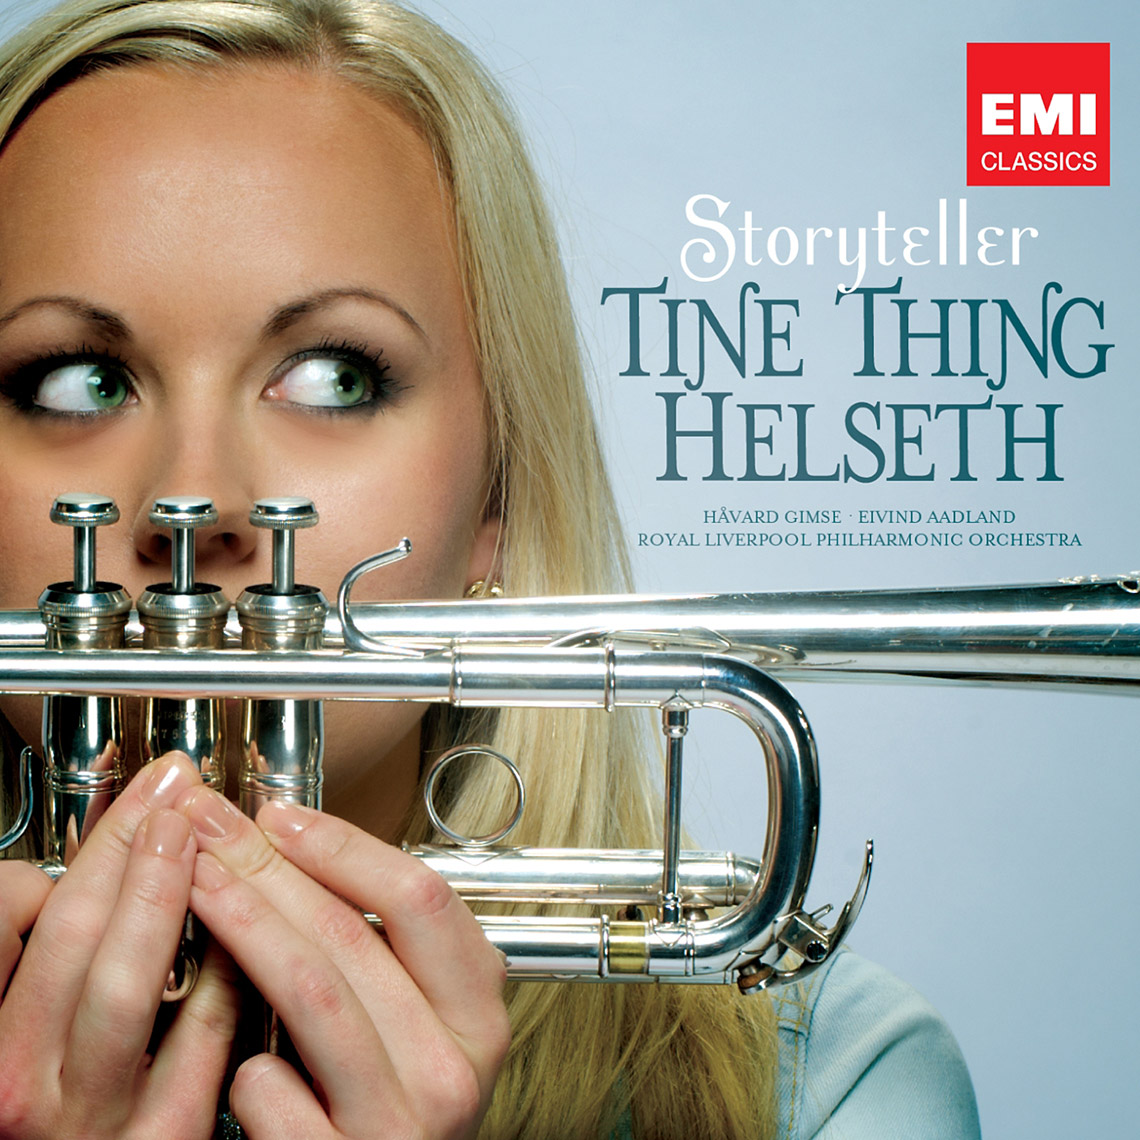 Tine Thing - EMI Music